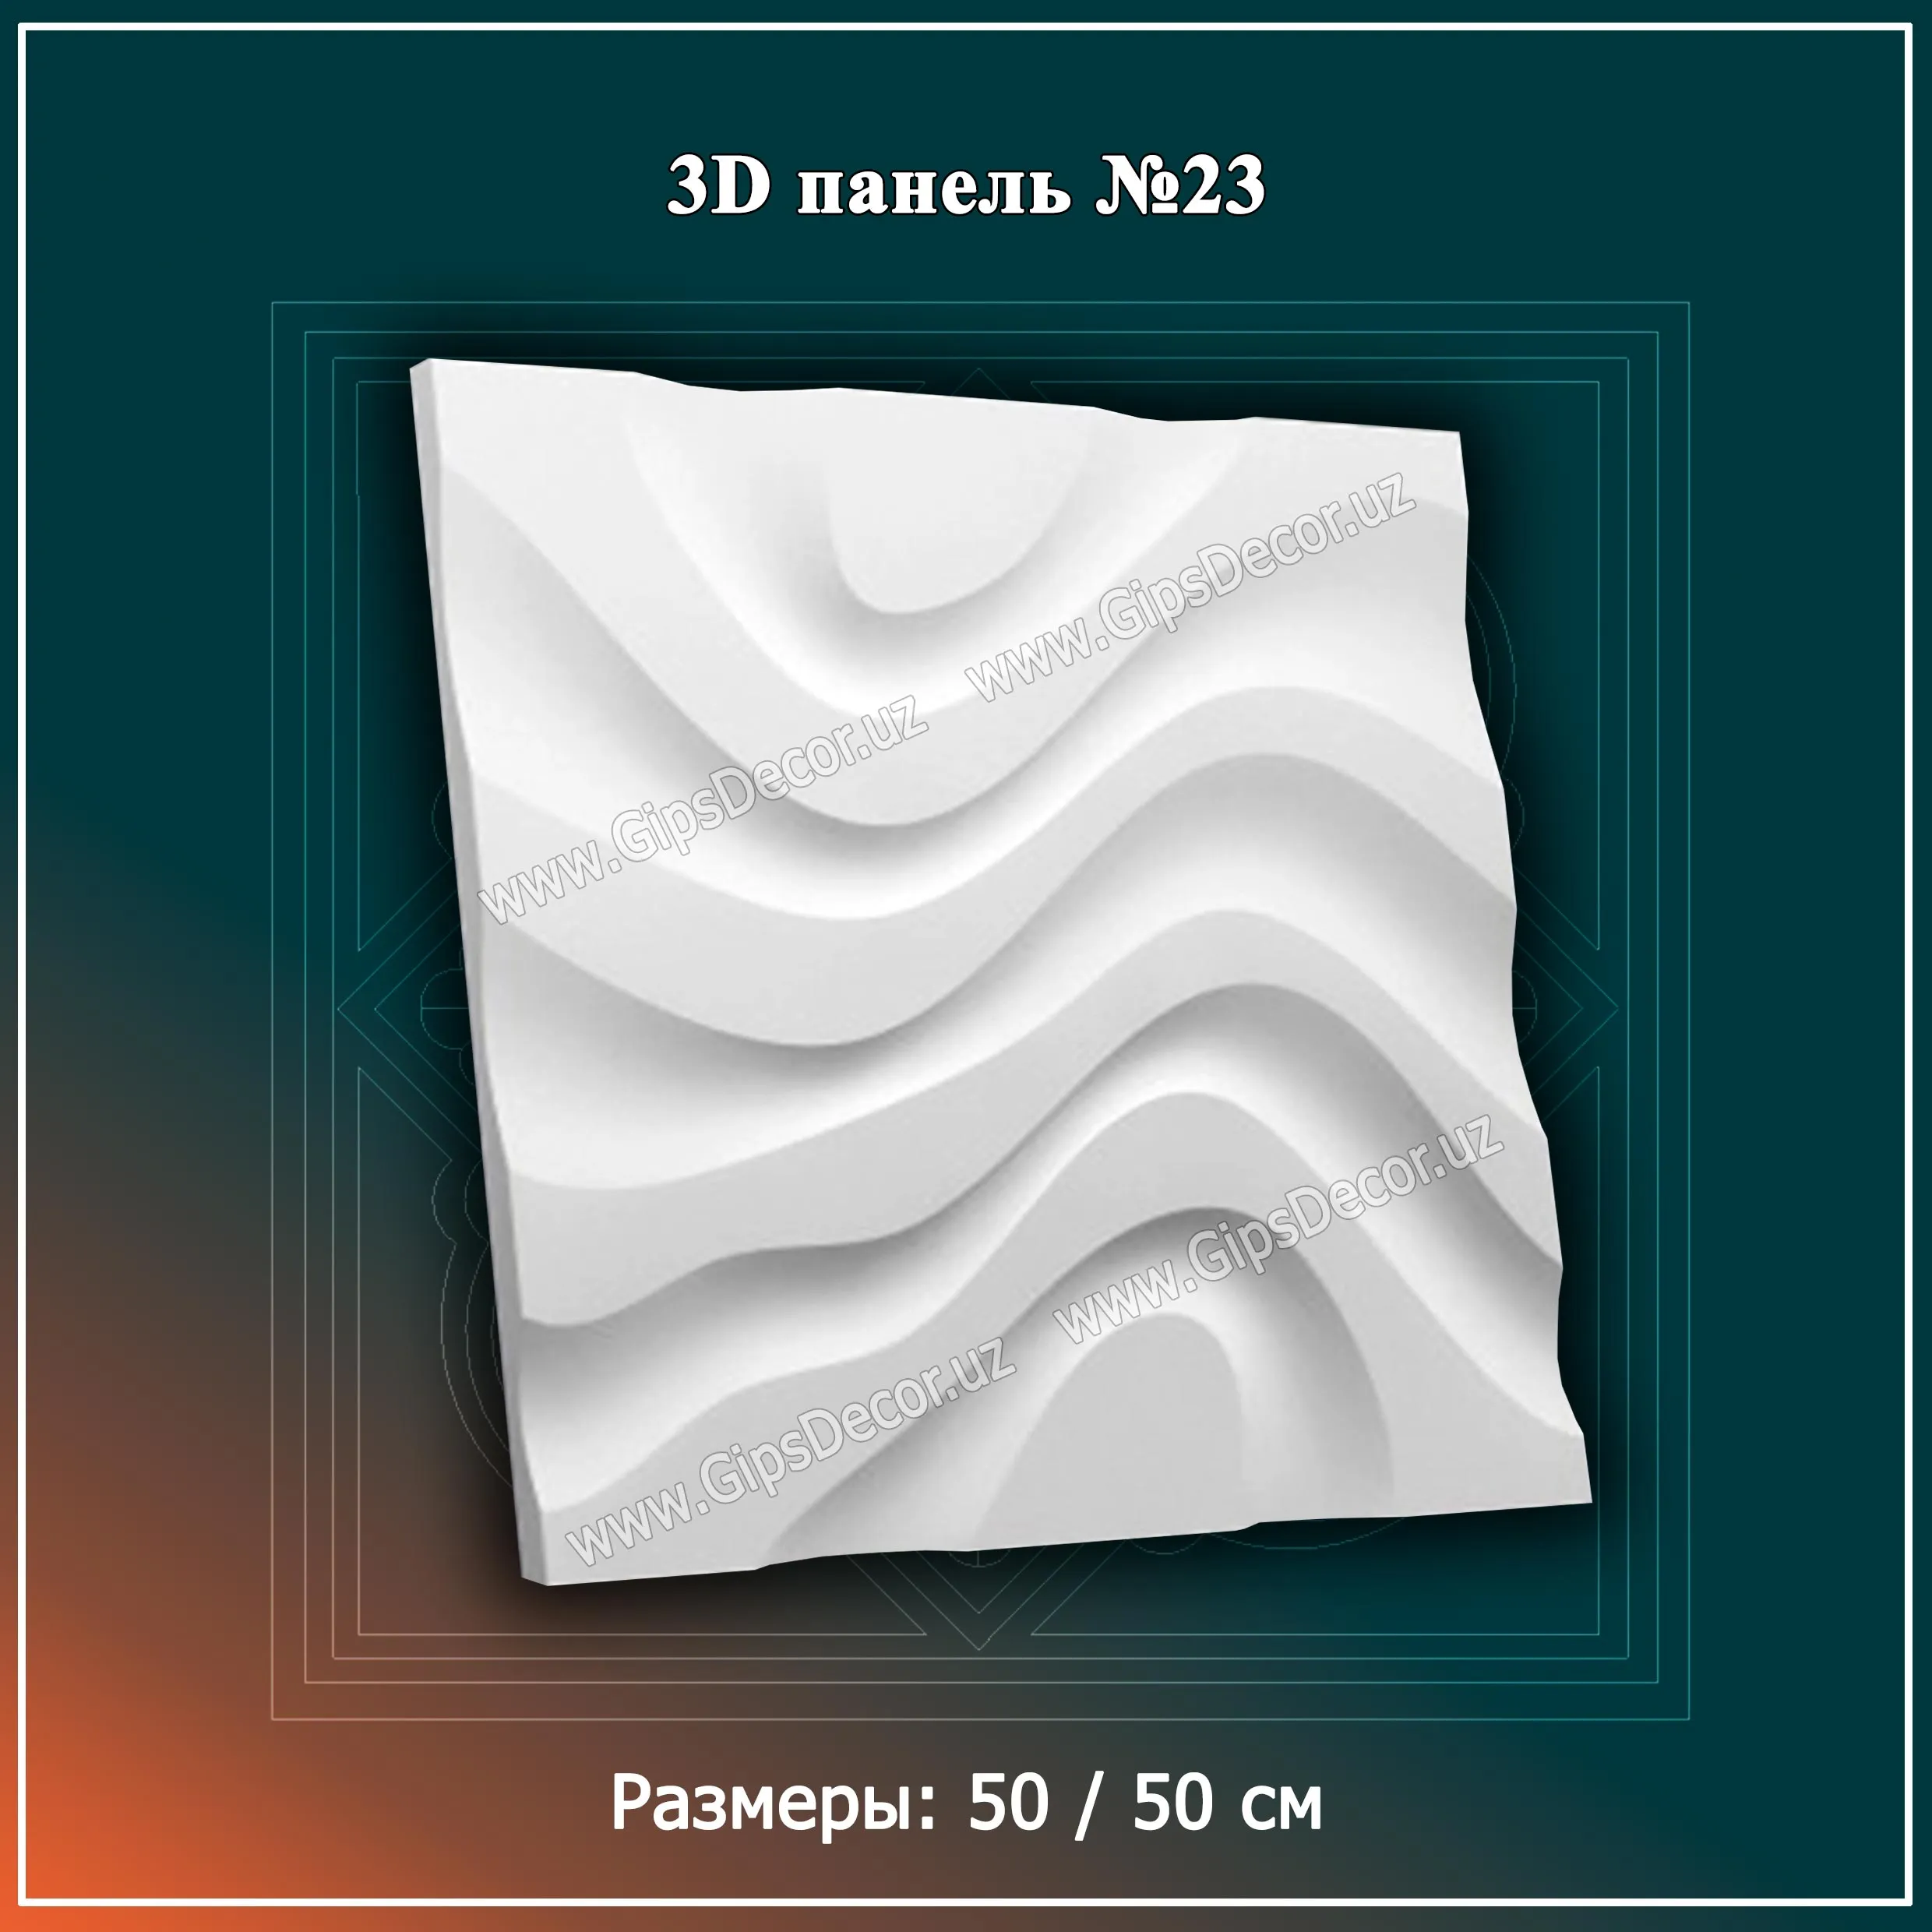 3D Панель №23 Размеры: 50 / 50 см#1